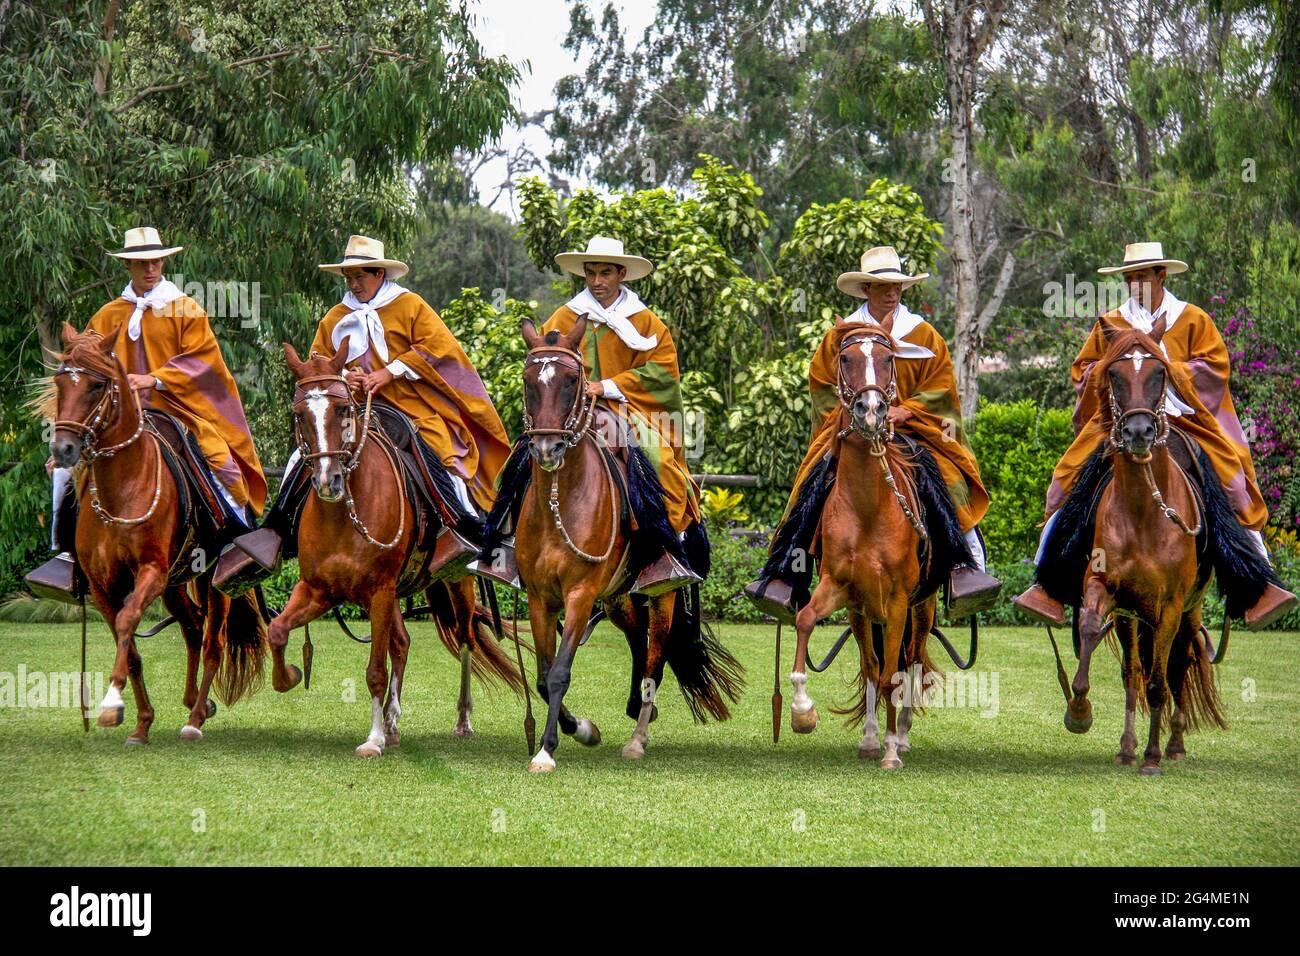 Peruvian Horse riding display at Hacienda Mamacona Stock Photo